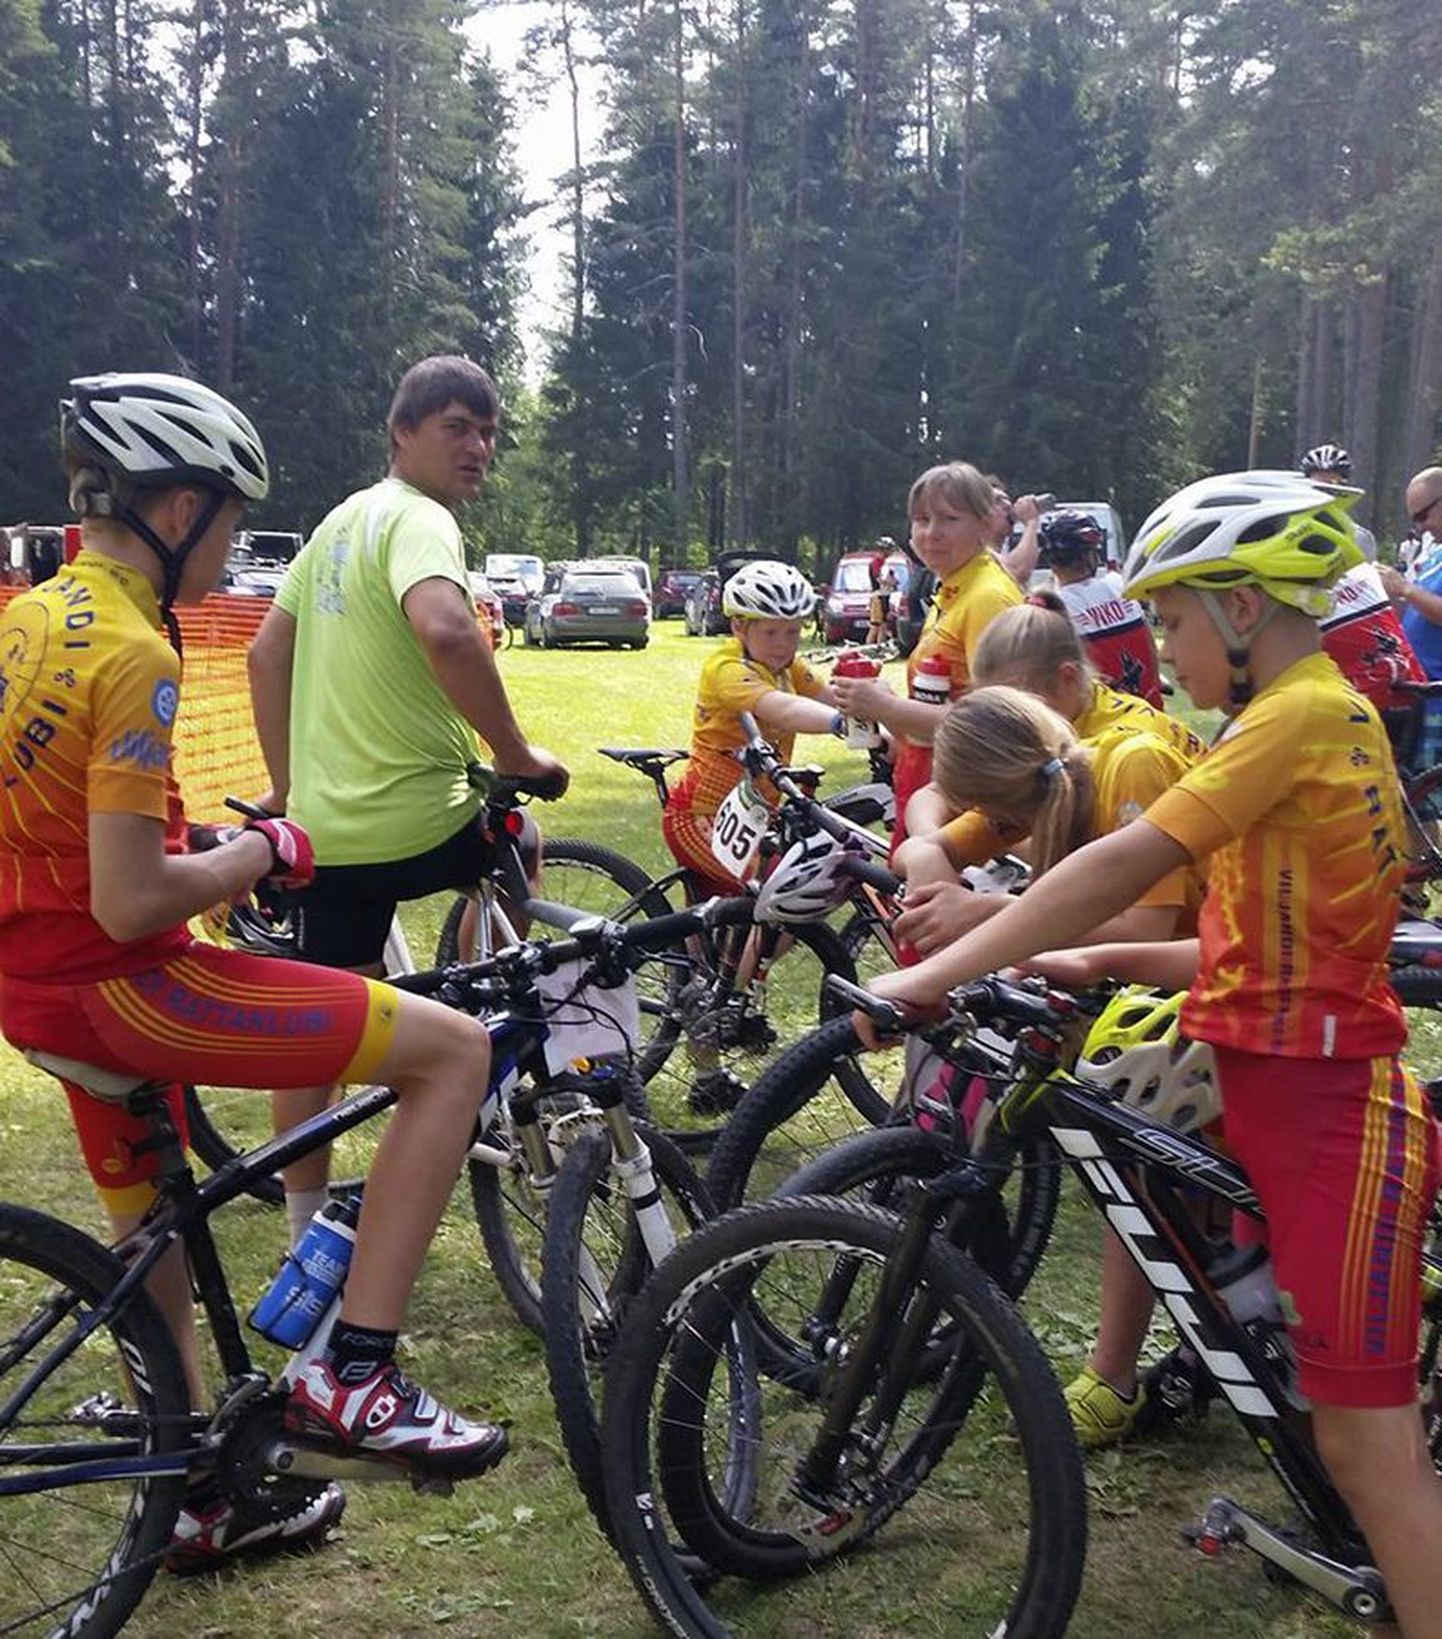 Suure-Jaani valla noored jalgrattasportlased andsid suvemängudel koduvalla kolmandale kohale jõudmisse oma südi võistlusega märkimisväärse panuse.